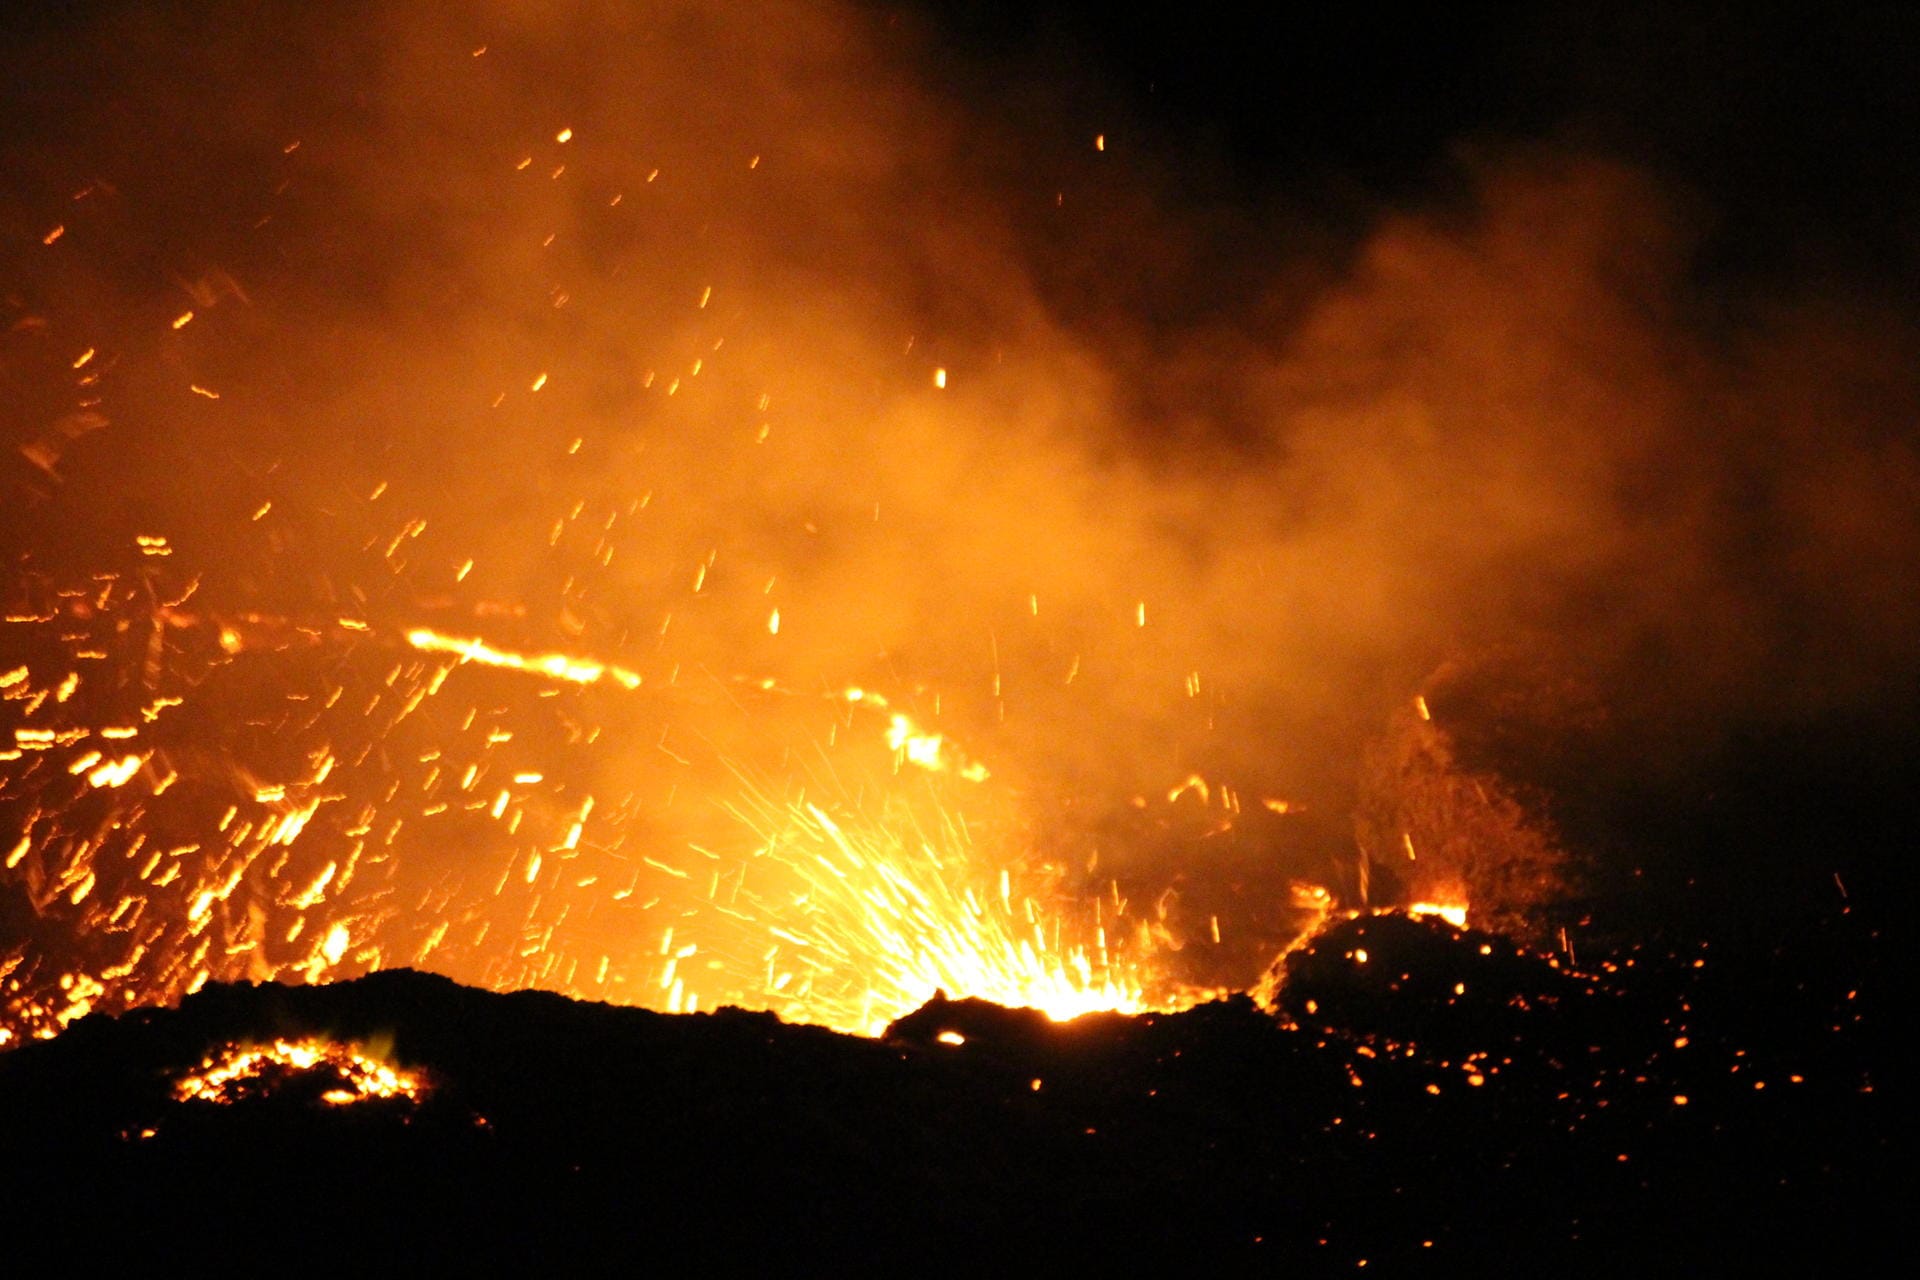 Eine weitere Attraktion der Wüste ist der Vulkan Erta Ale. Er ist einer der wenigen dauerhaft aktiven Vulkane weltweit, die man besuchen kann. Bei einer Wanderung kann man den permanenten Lavasee bestaunen.